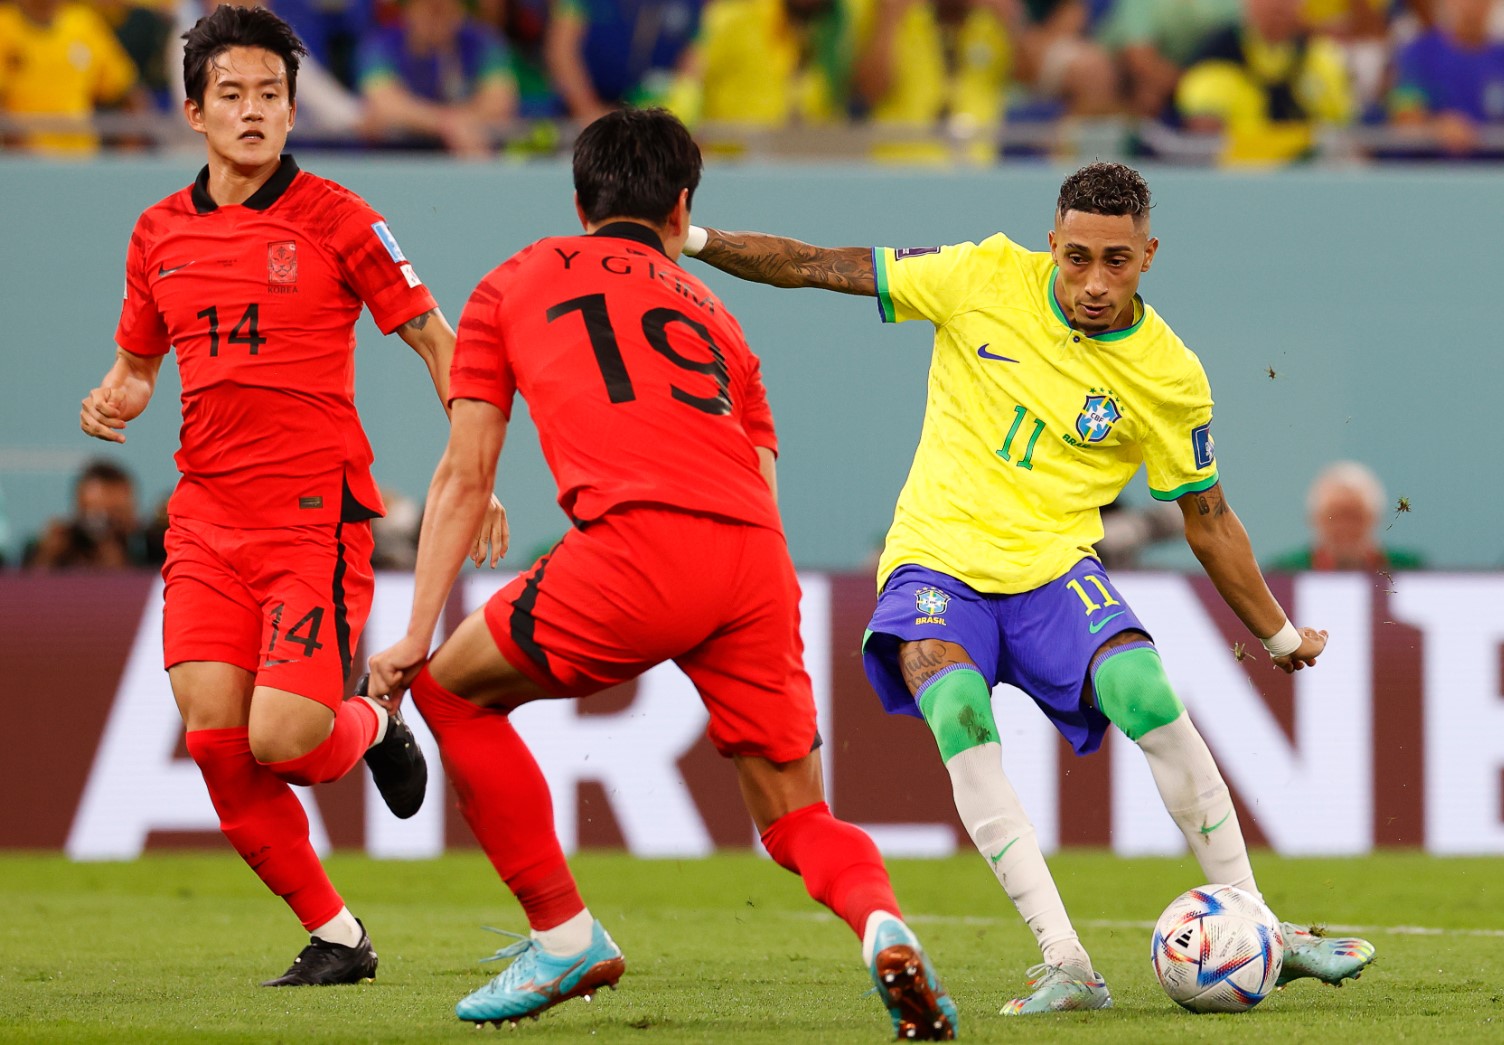 Бразилия разгроми с 4:1 Южна Корея и достигна 1/4-финал в Катар